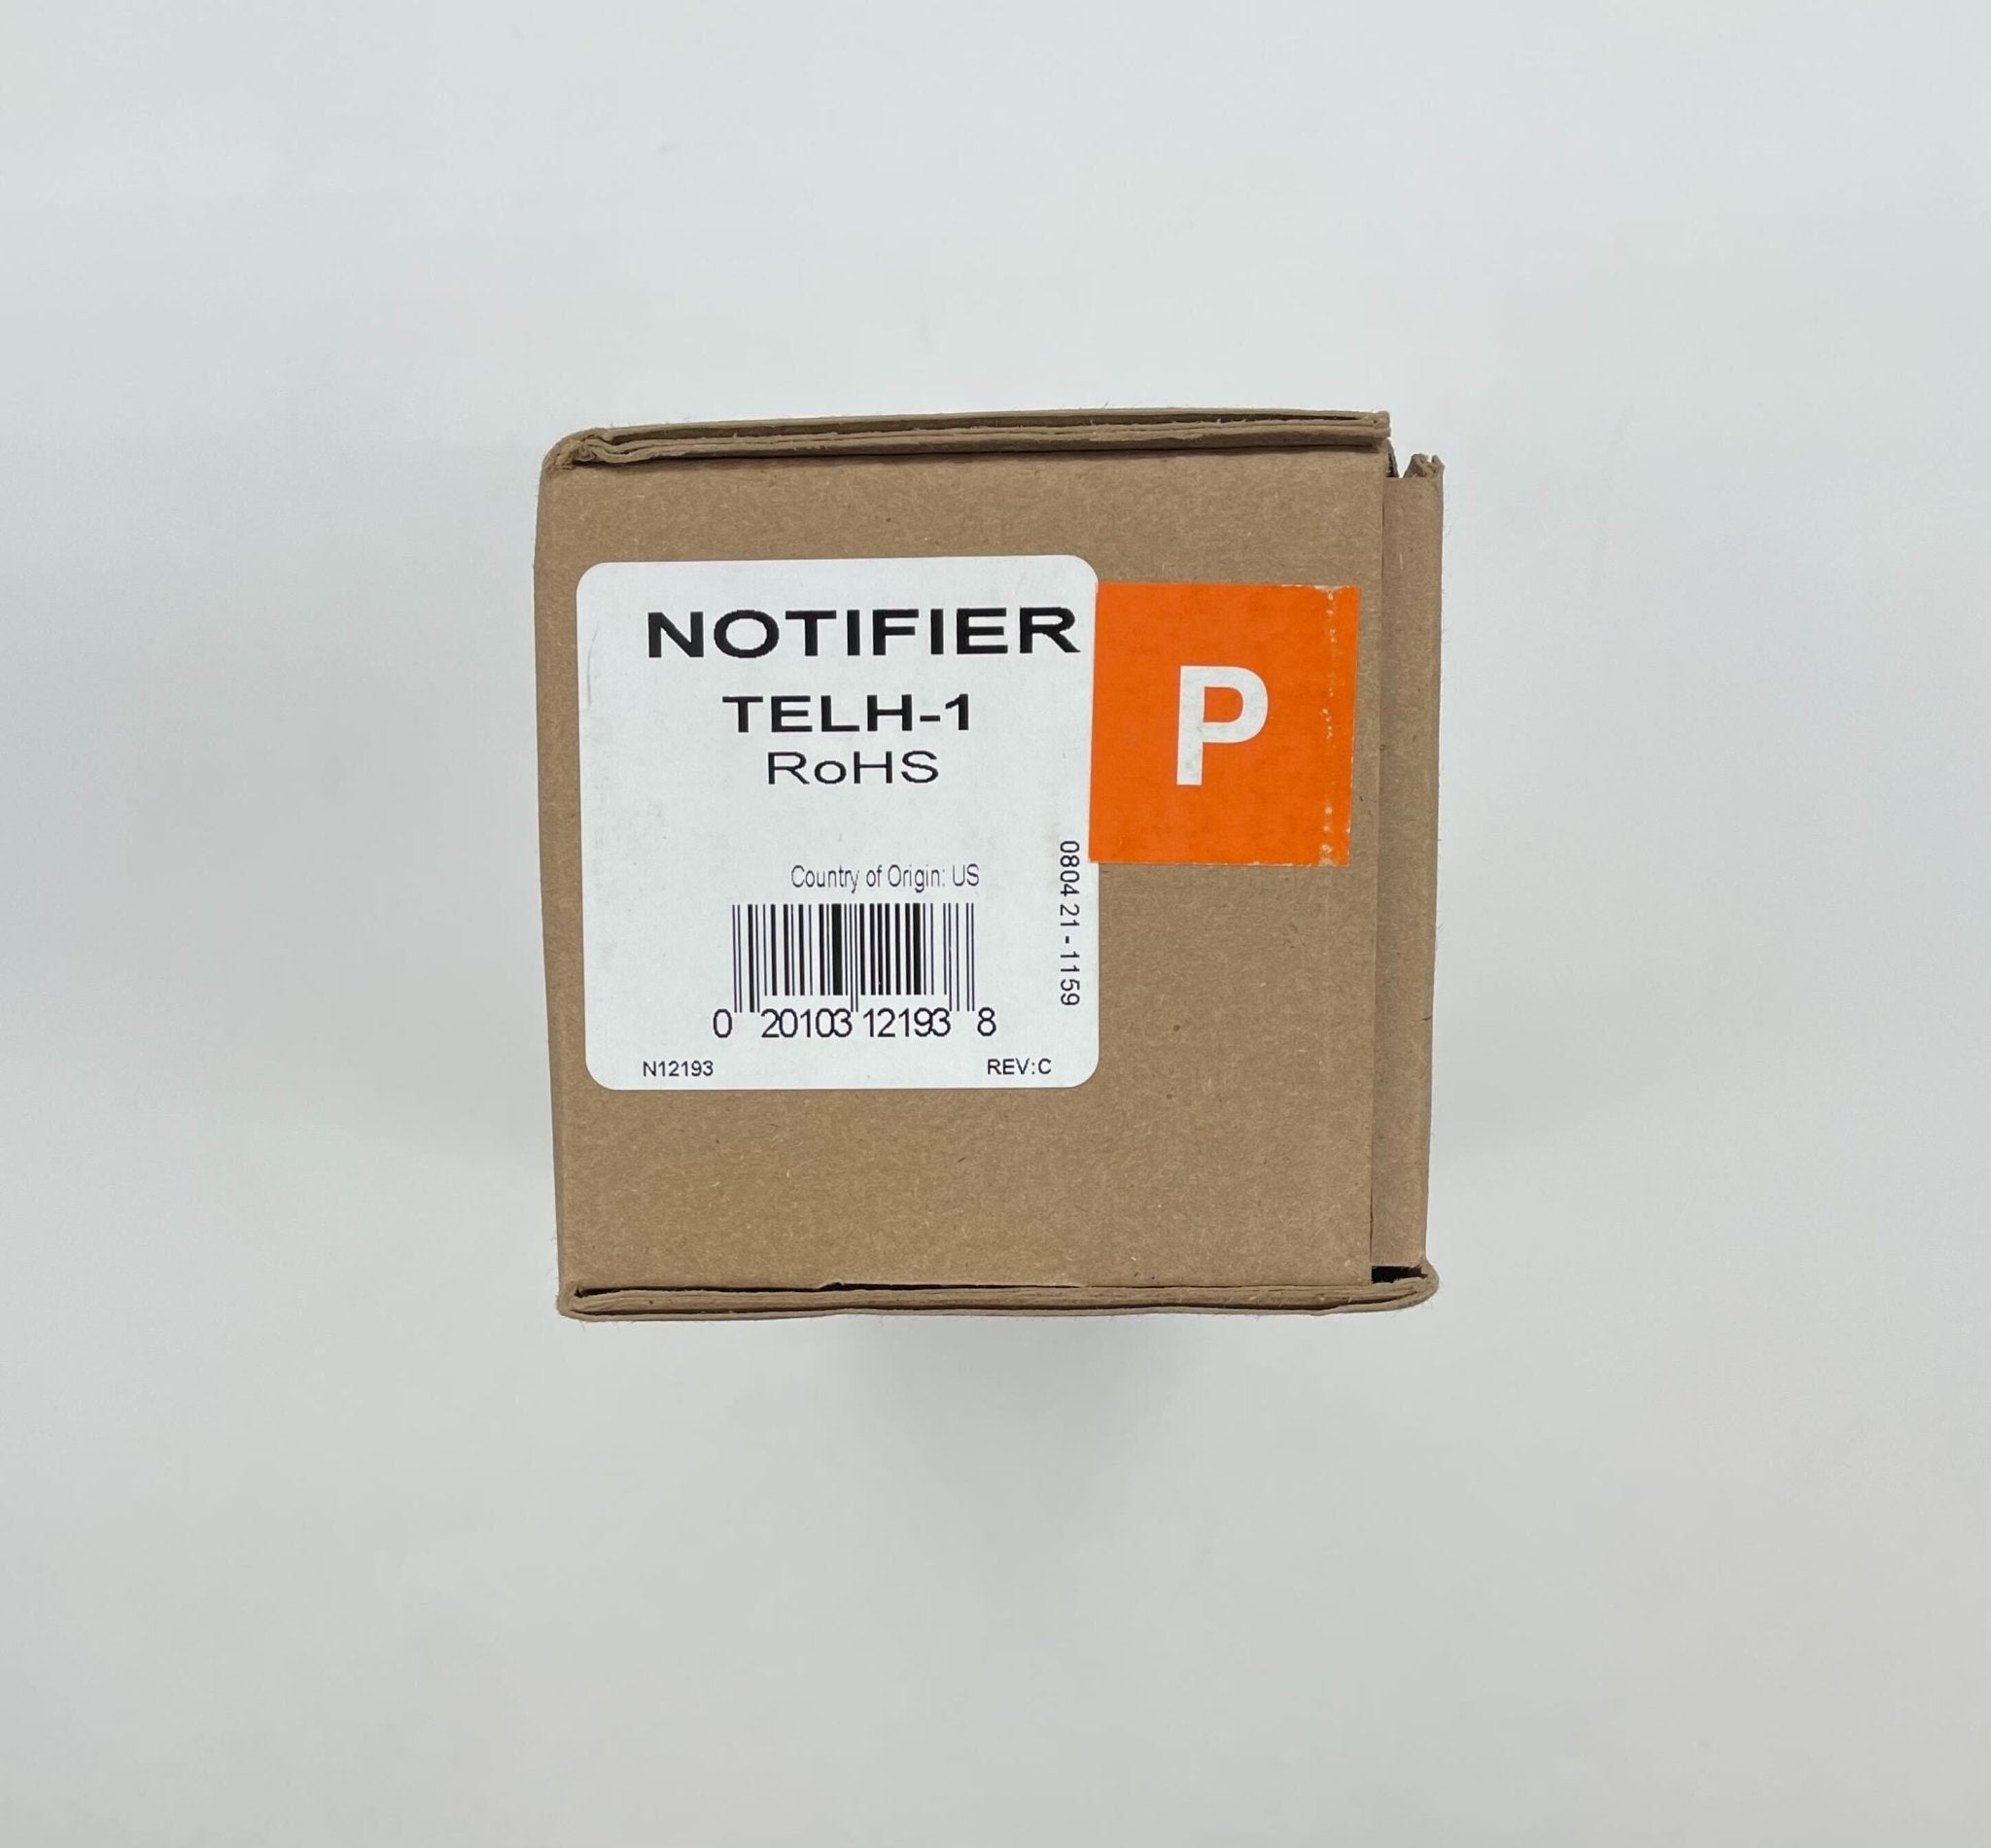 Notifier TELH-1 - The Fire Alarm Supplier